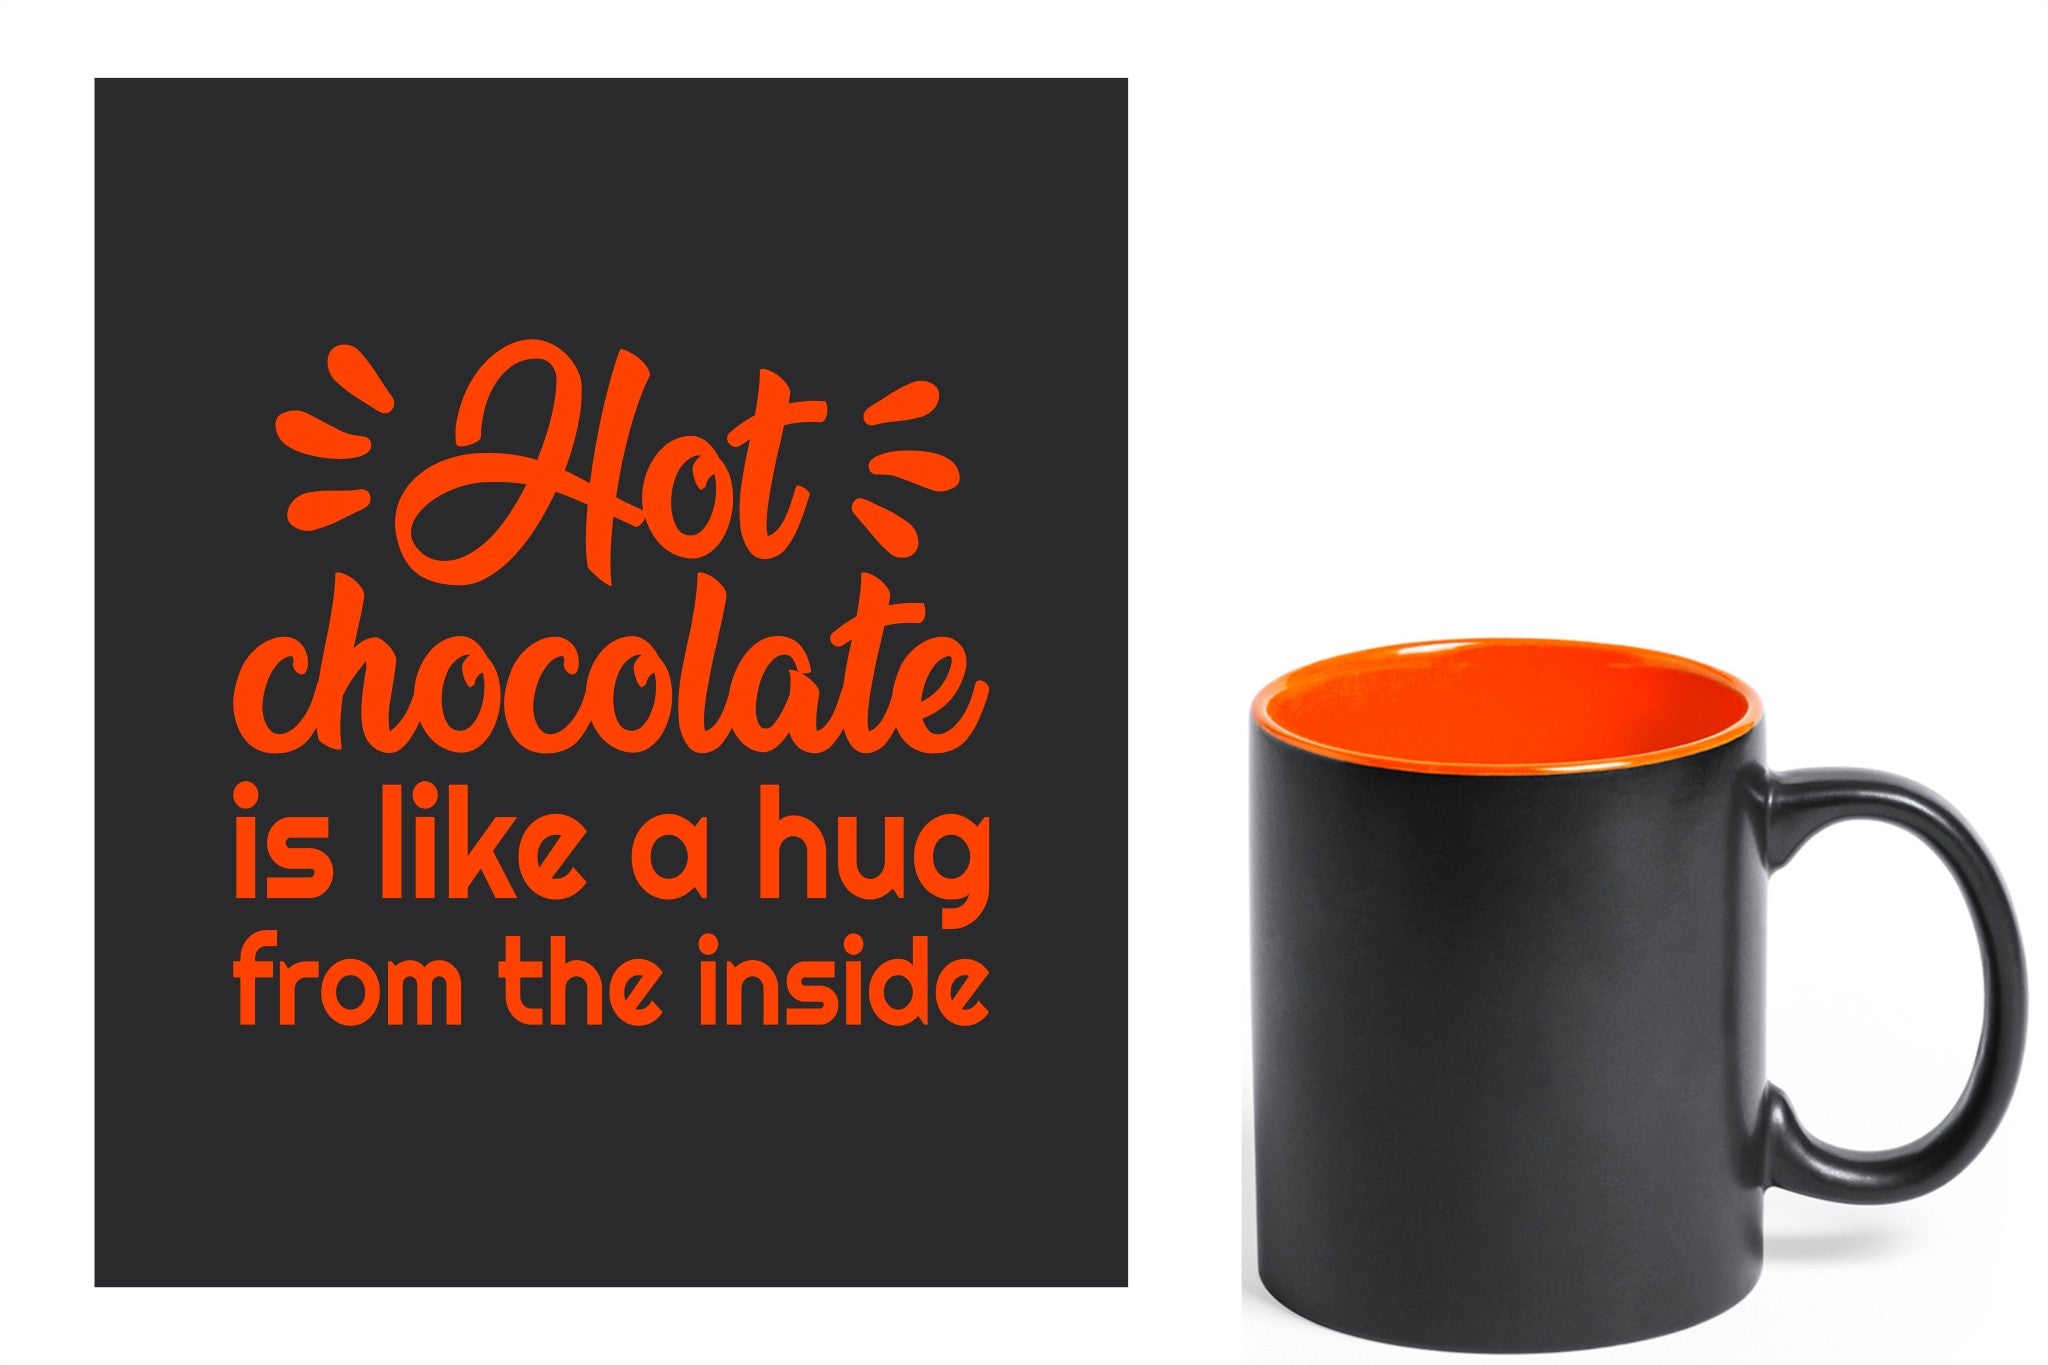 zwarte keramische mok met oranje gravure  'Hot chocolate is like a hug from the inside'.